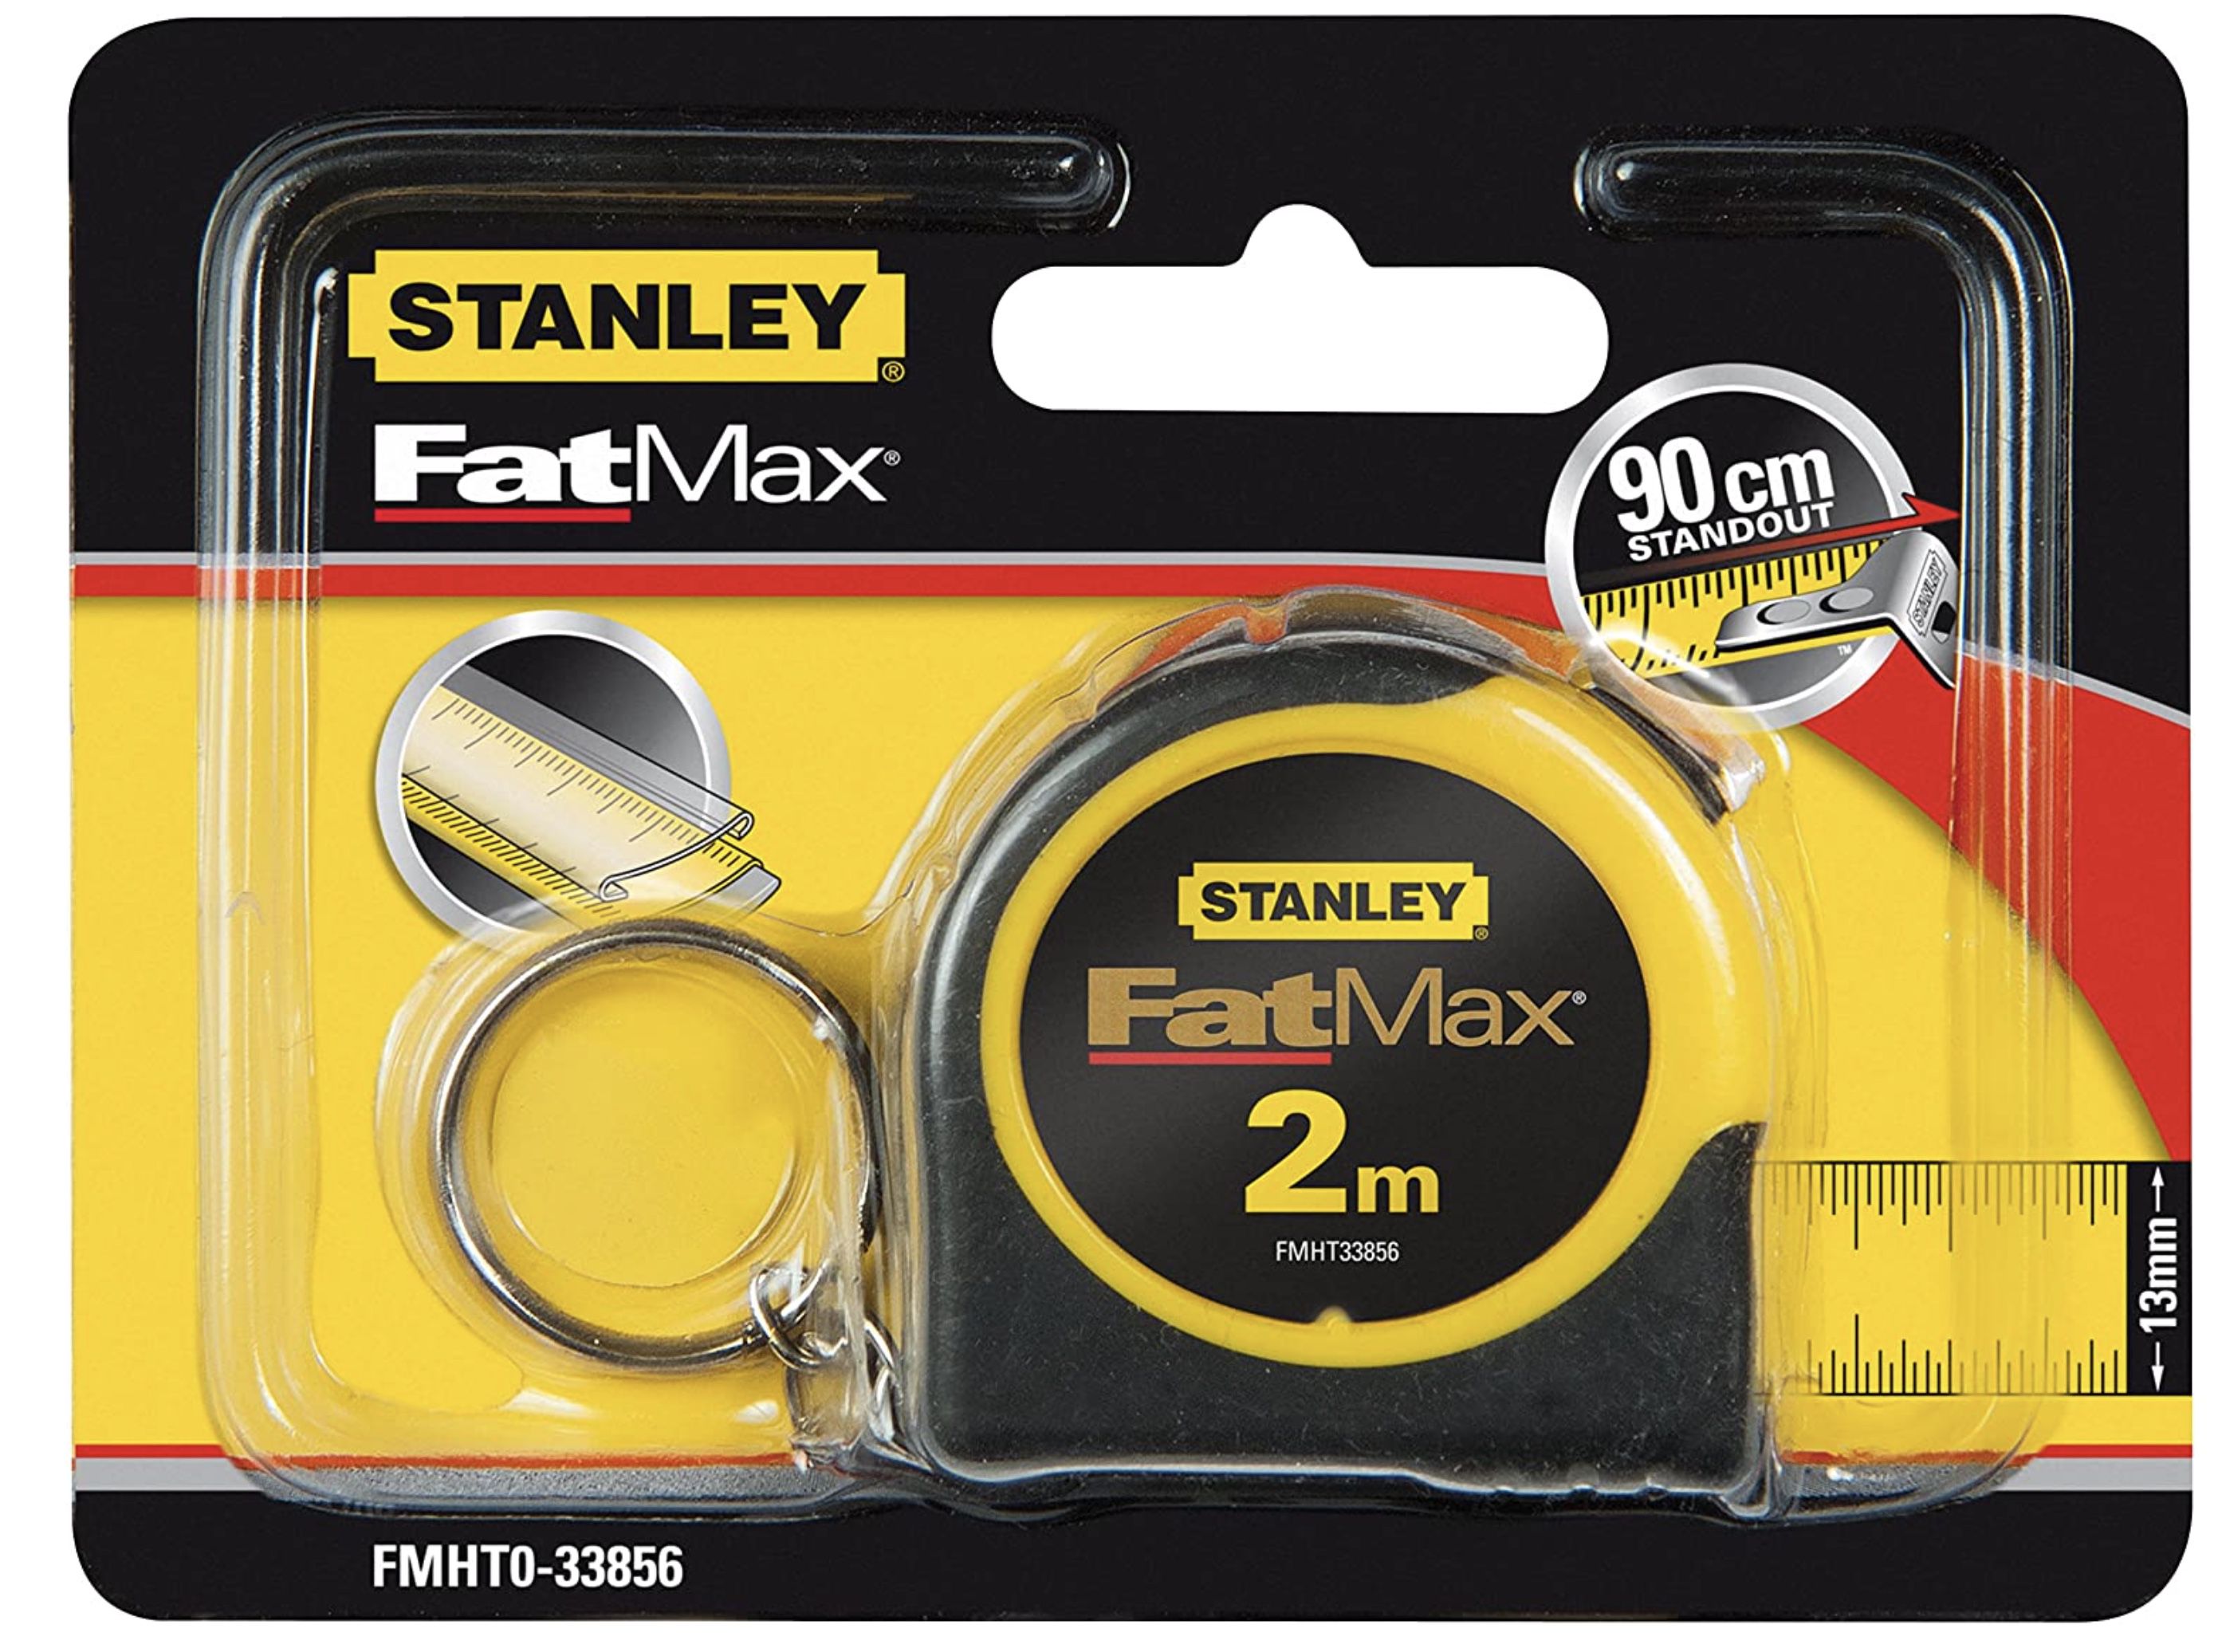 Stanley FatMax Bandmass 2m mit Powerlock für 4€ (statt 10€)   Prime